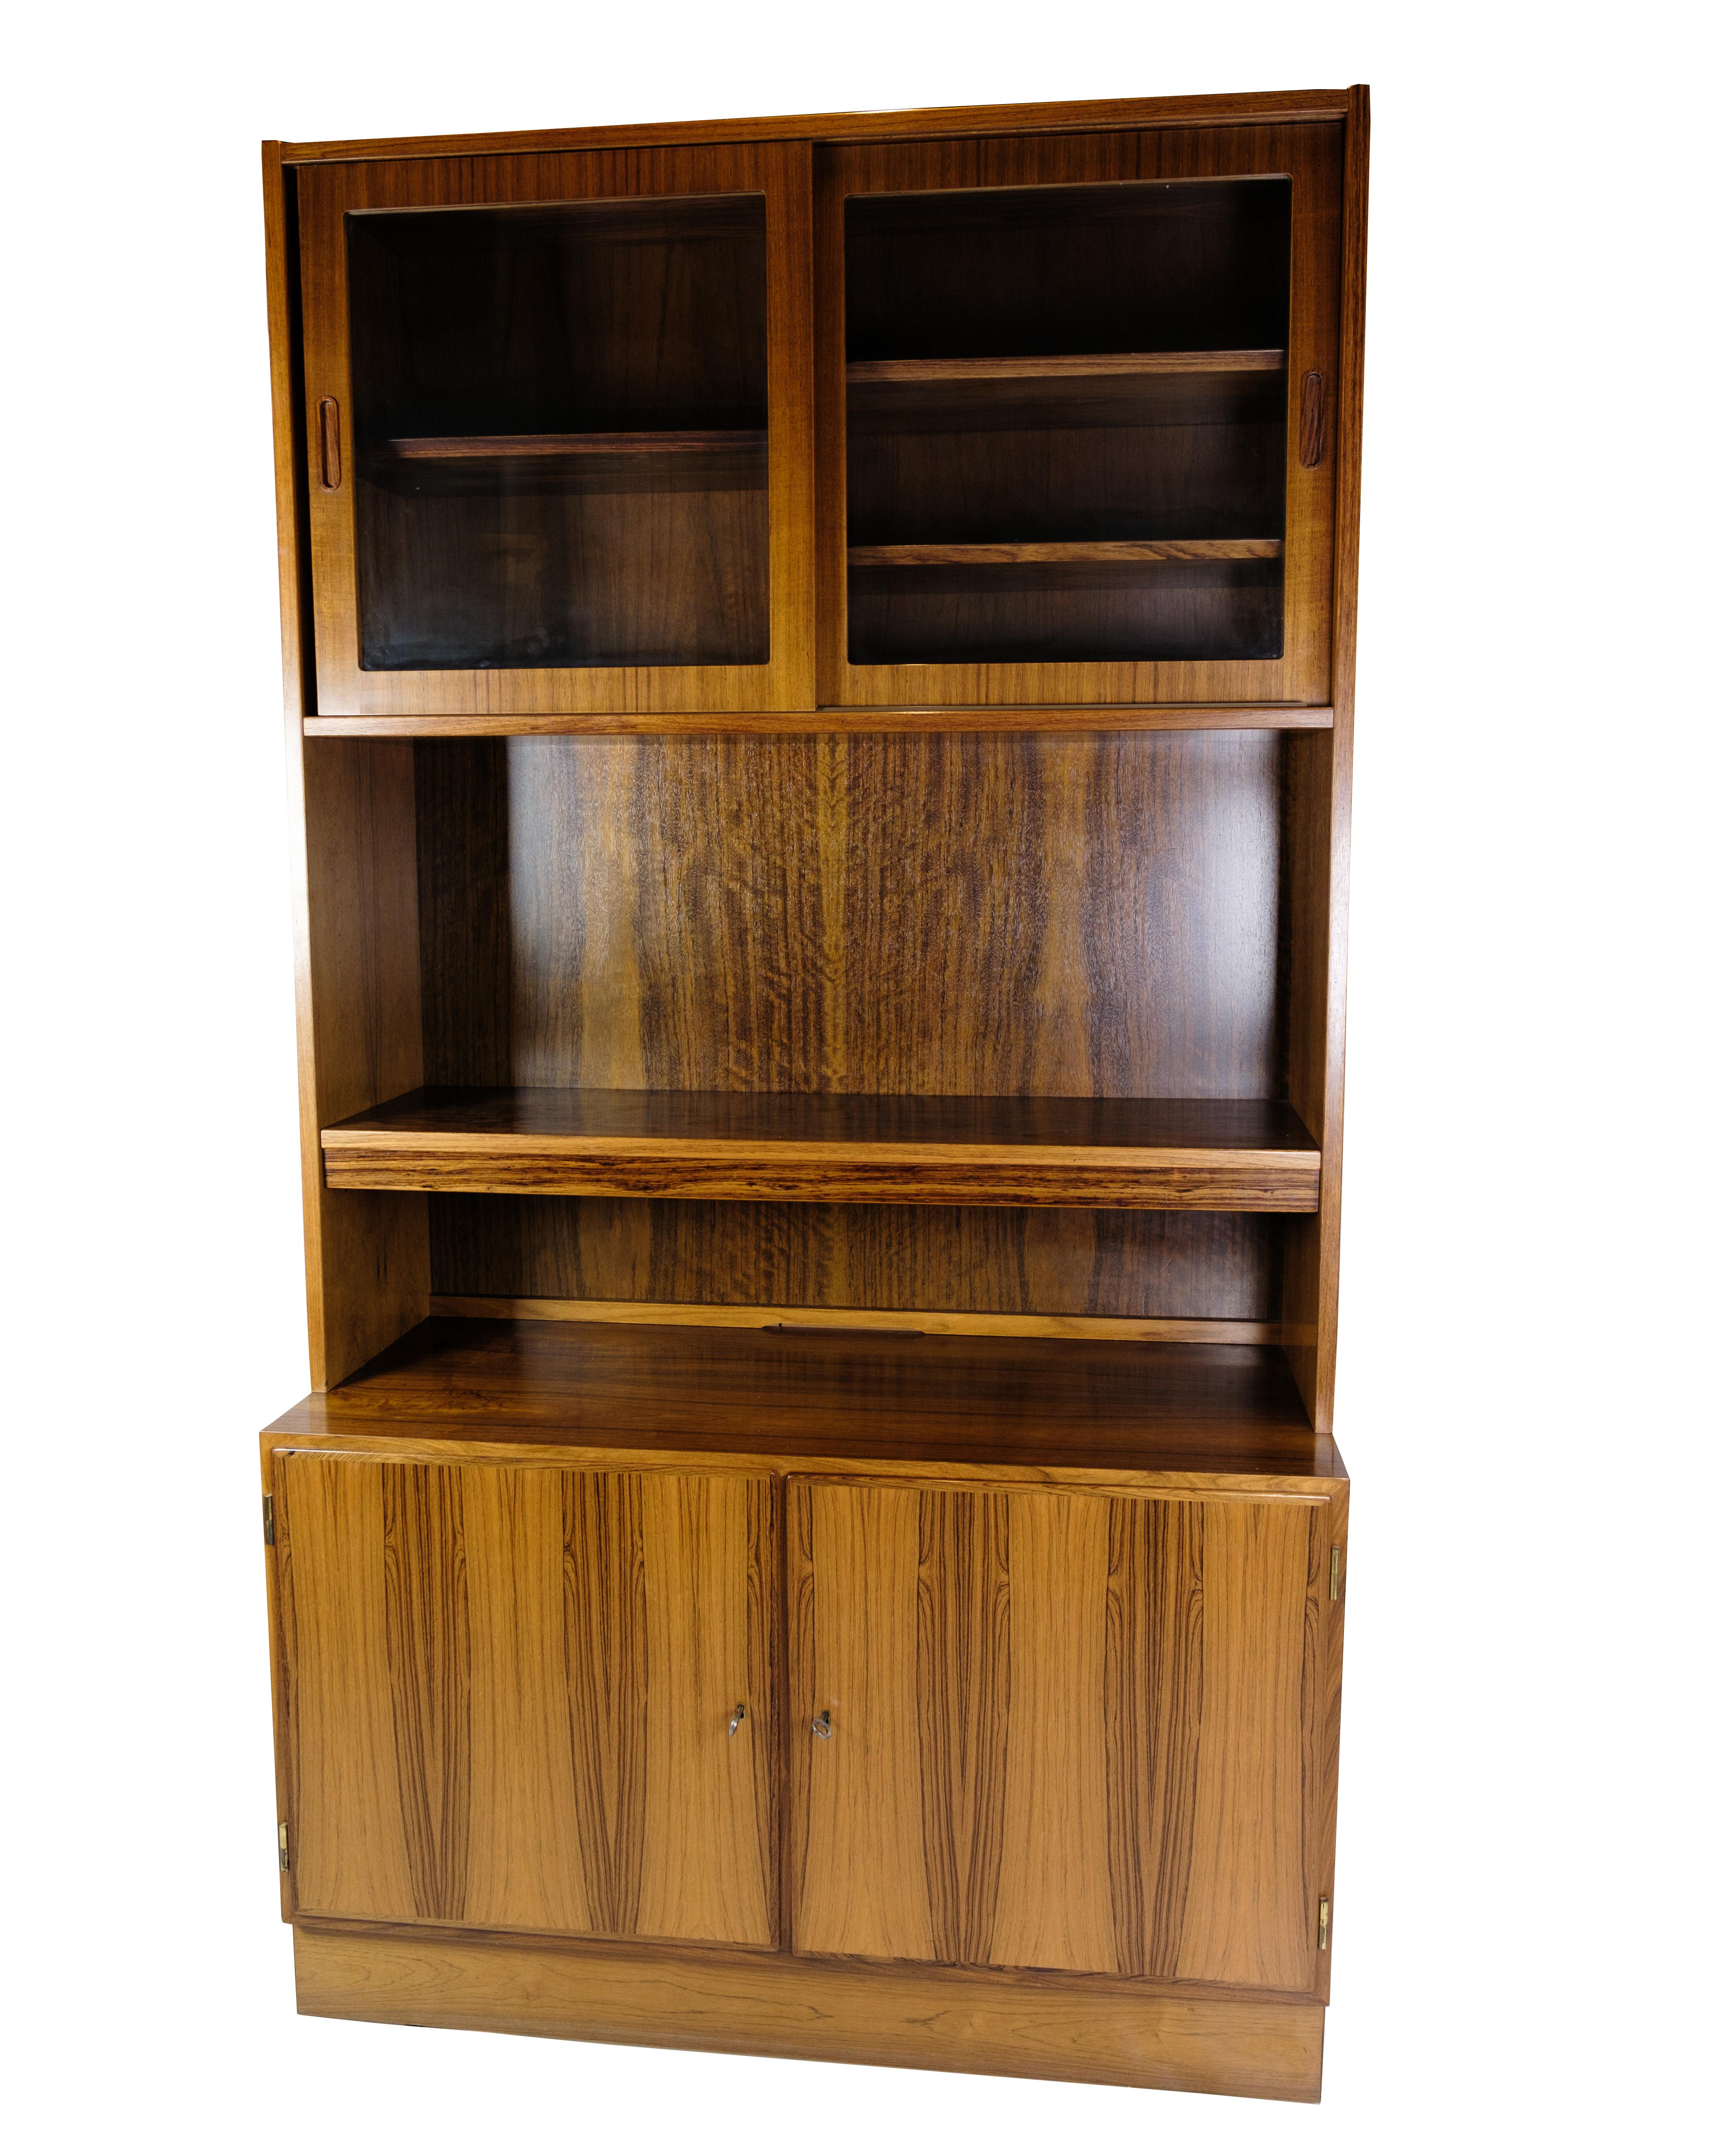 Dieses Bücherregal aus Palisanderholz von Hundevad ist ein beeindruckendes Beispiel für dänisches Möbeldesign aus den 1960er Jahren. Hundevad, ein renommierter Möbelhersteller, der für seine hohe Qualität und sein zeitloses Design bekannt ist, steht